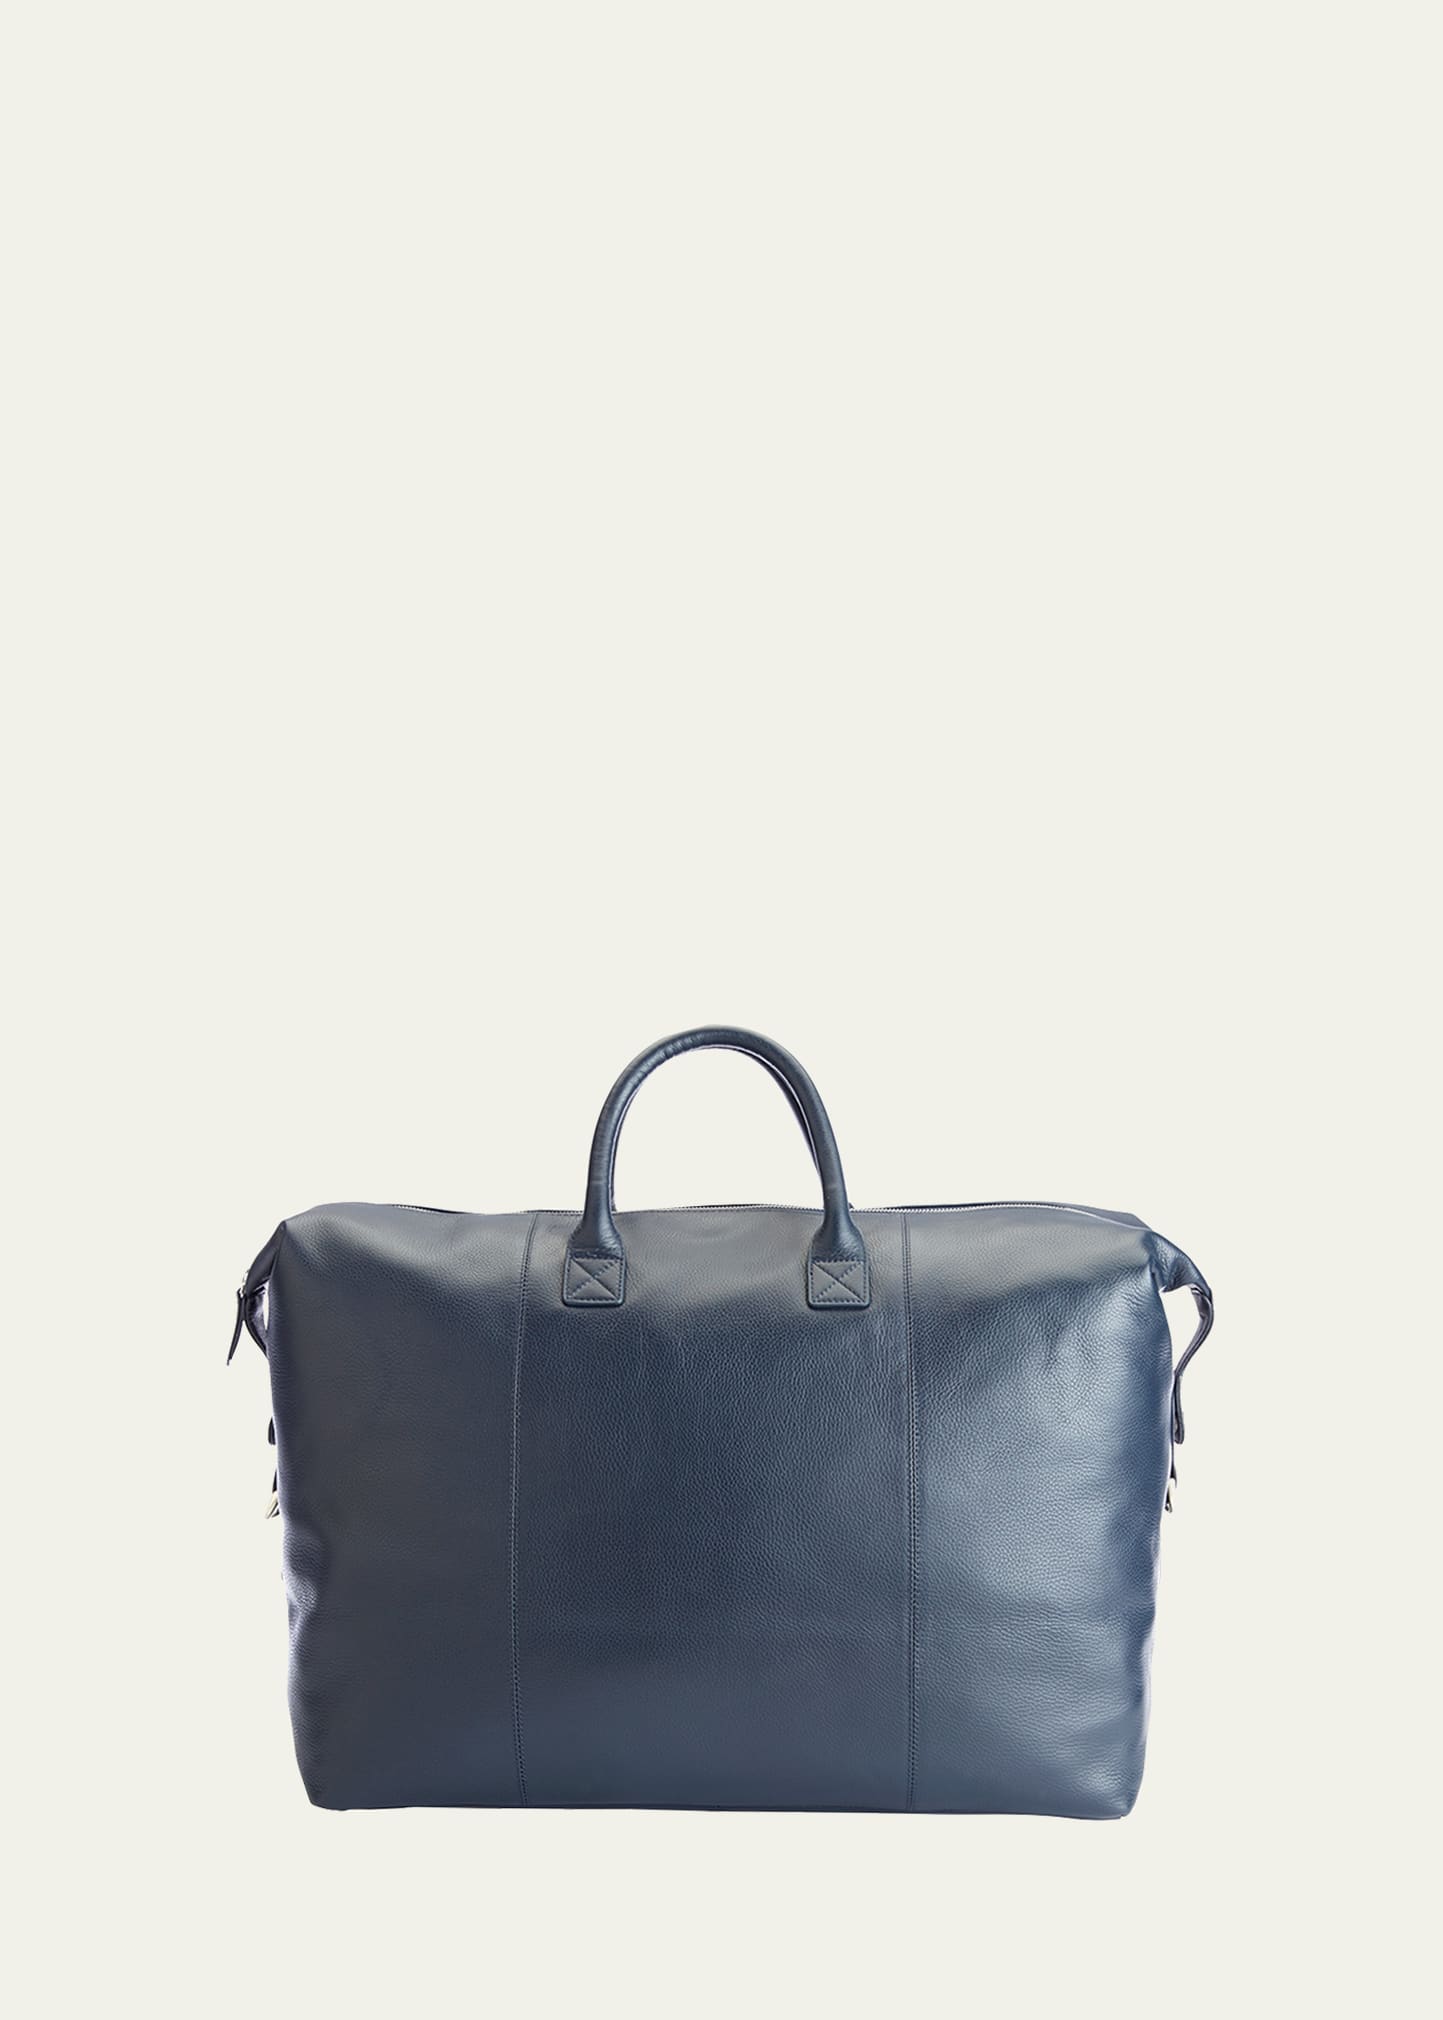 Royce New York Executive Weekender Duffel Bag In Navy Blue